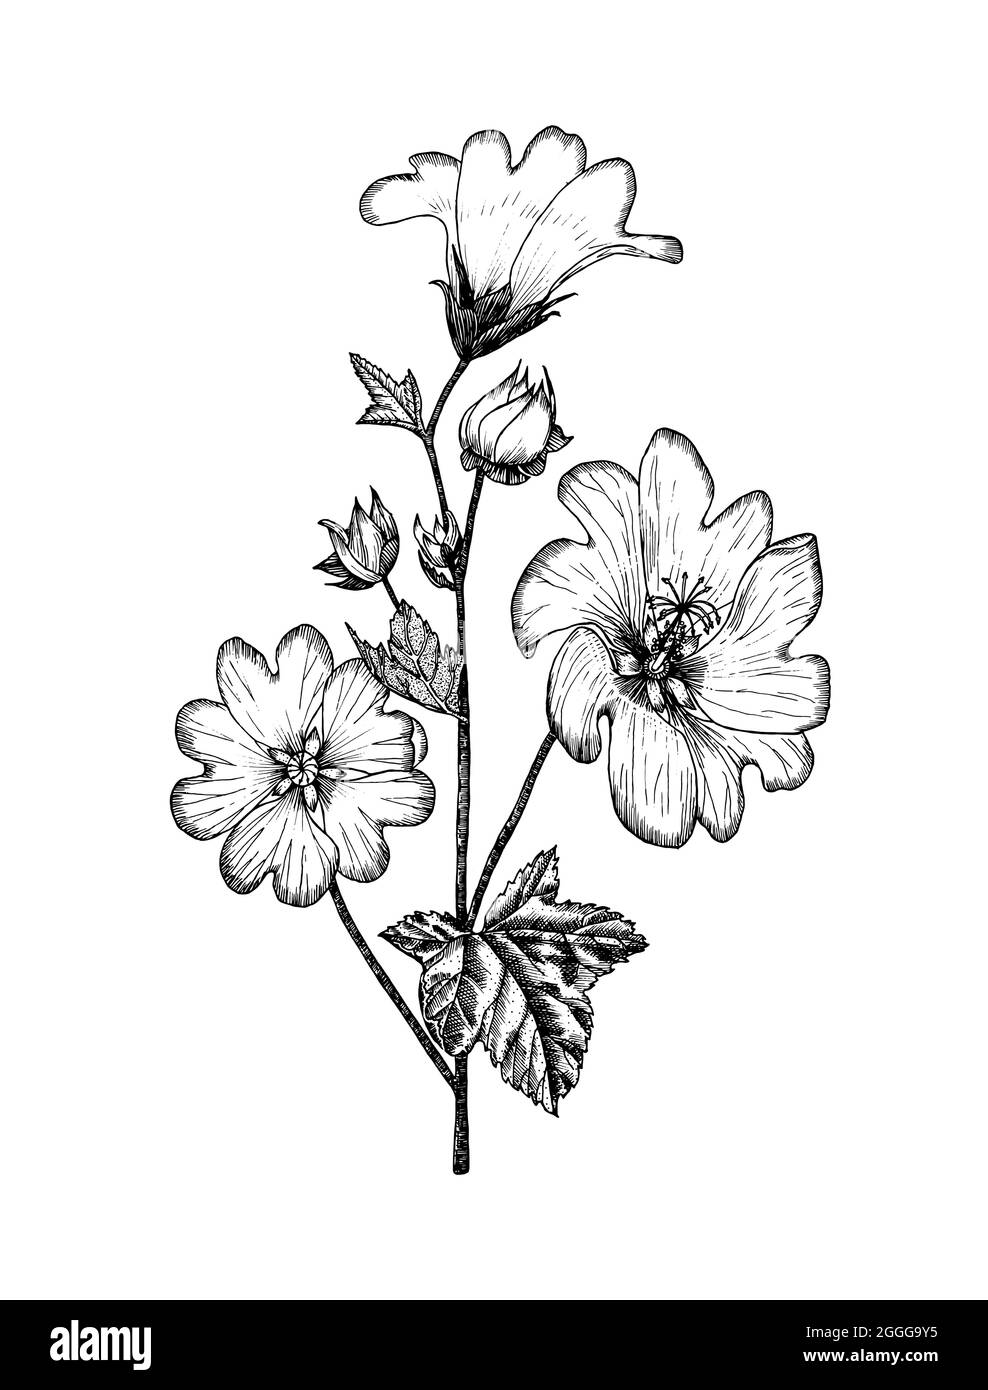 Illustration de plantes botaniques Althaea. Herbes vivaces herbacées millésimes. Bouquets fleuris dessinés à la main, fleurs sauvages et herbe en style esquisse Illustration de Vecteur